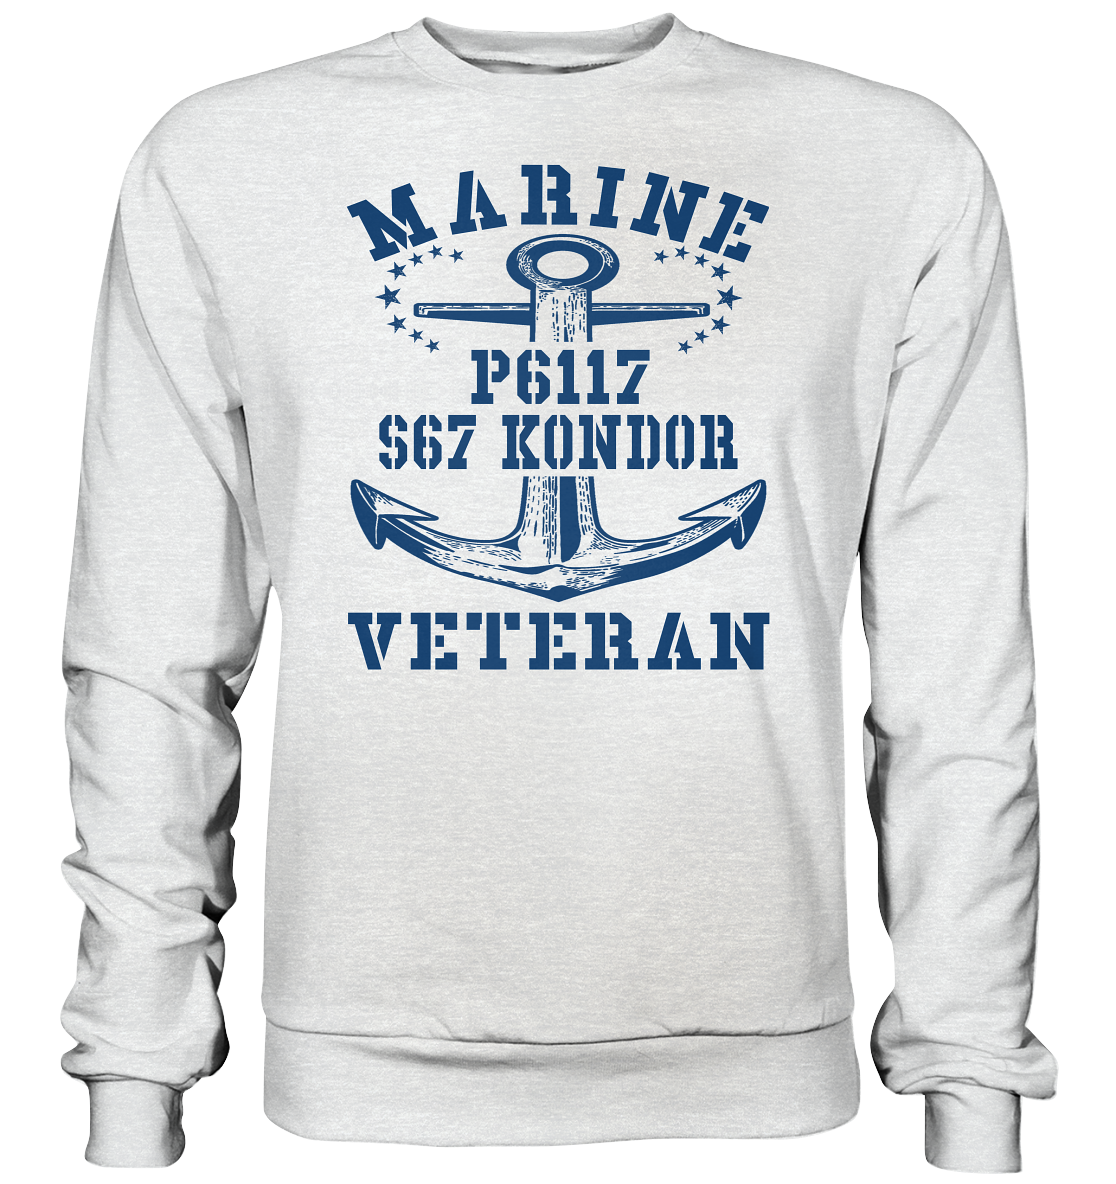 FK-Schnellboot P6117 KONDOR Marine Veteran - Premium Sweatshirt